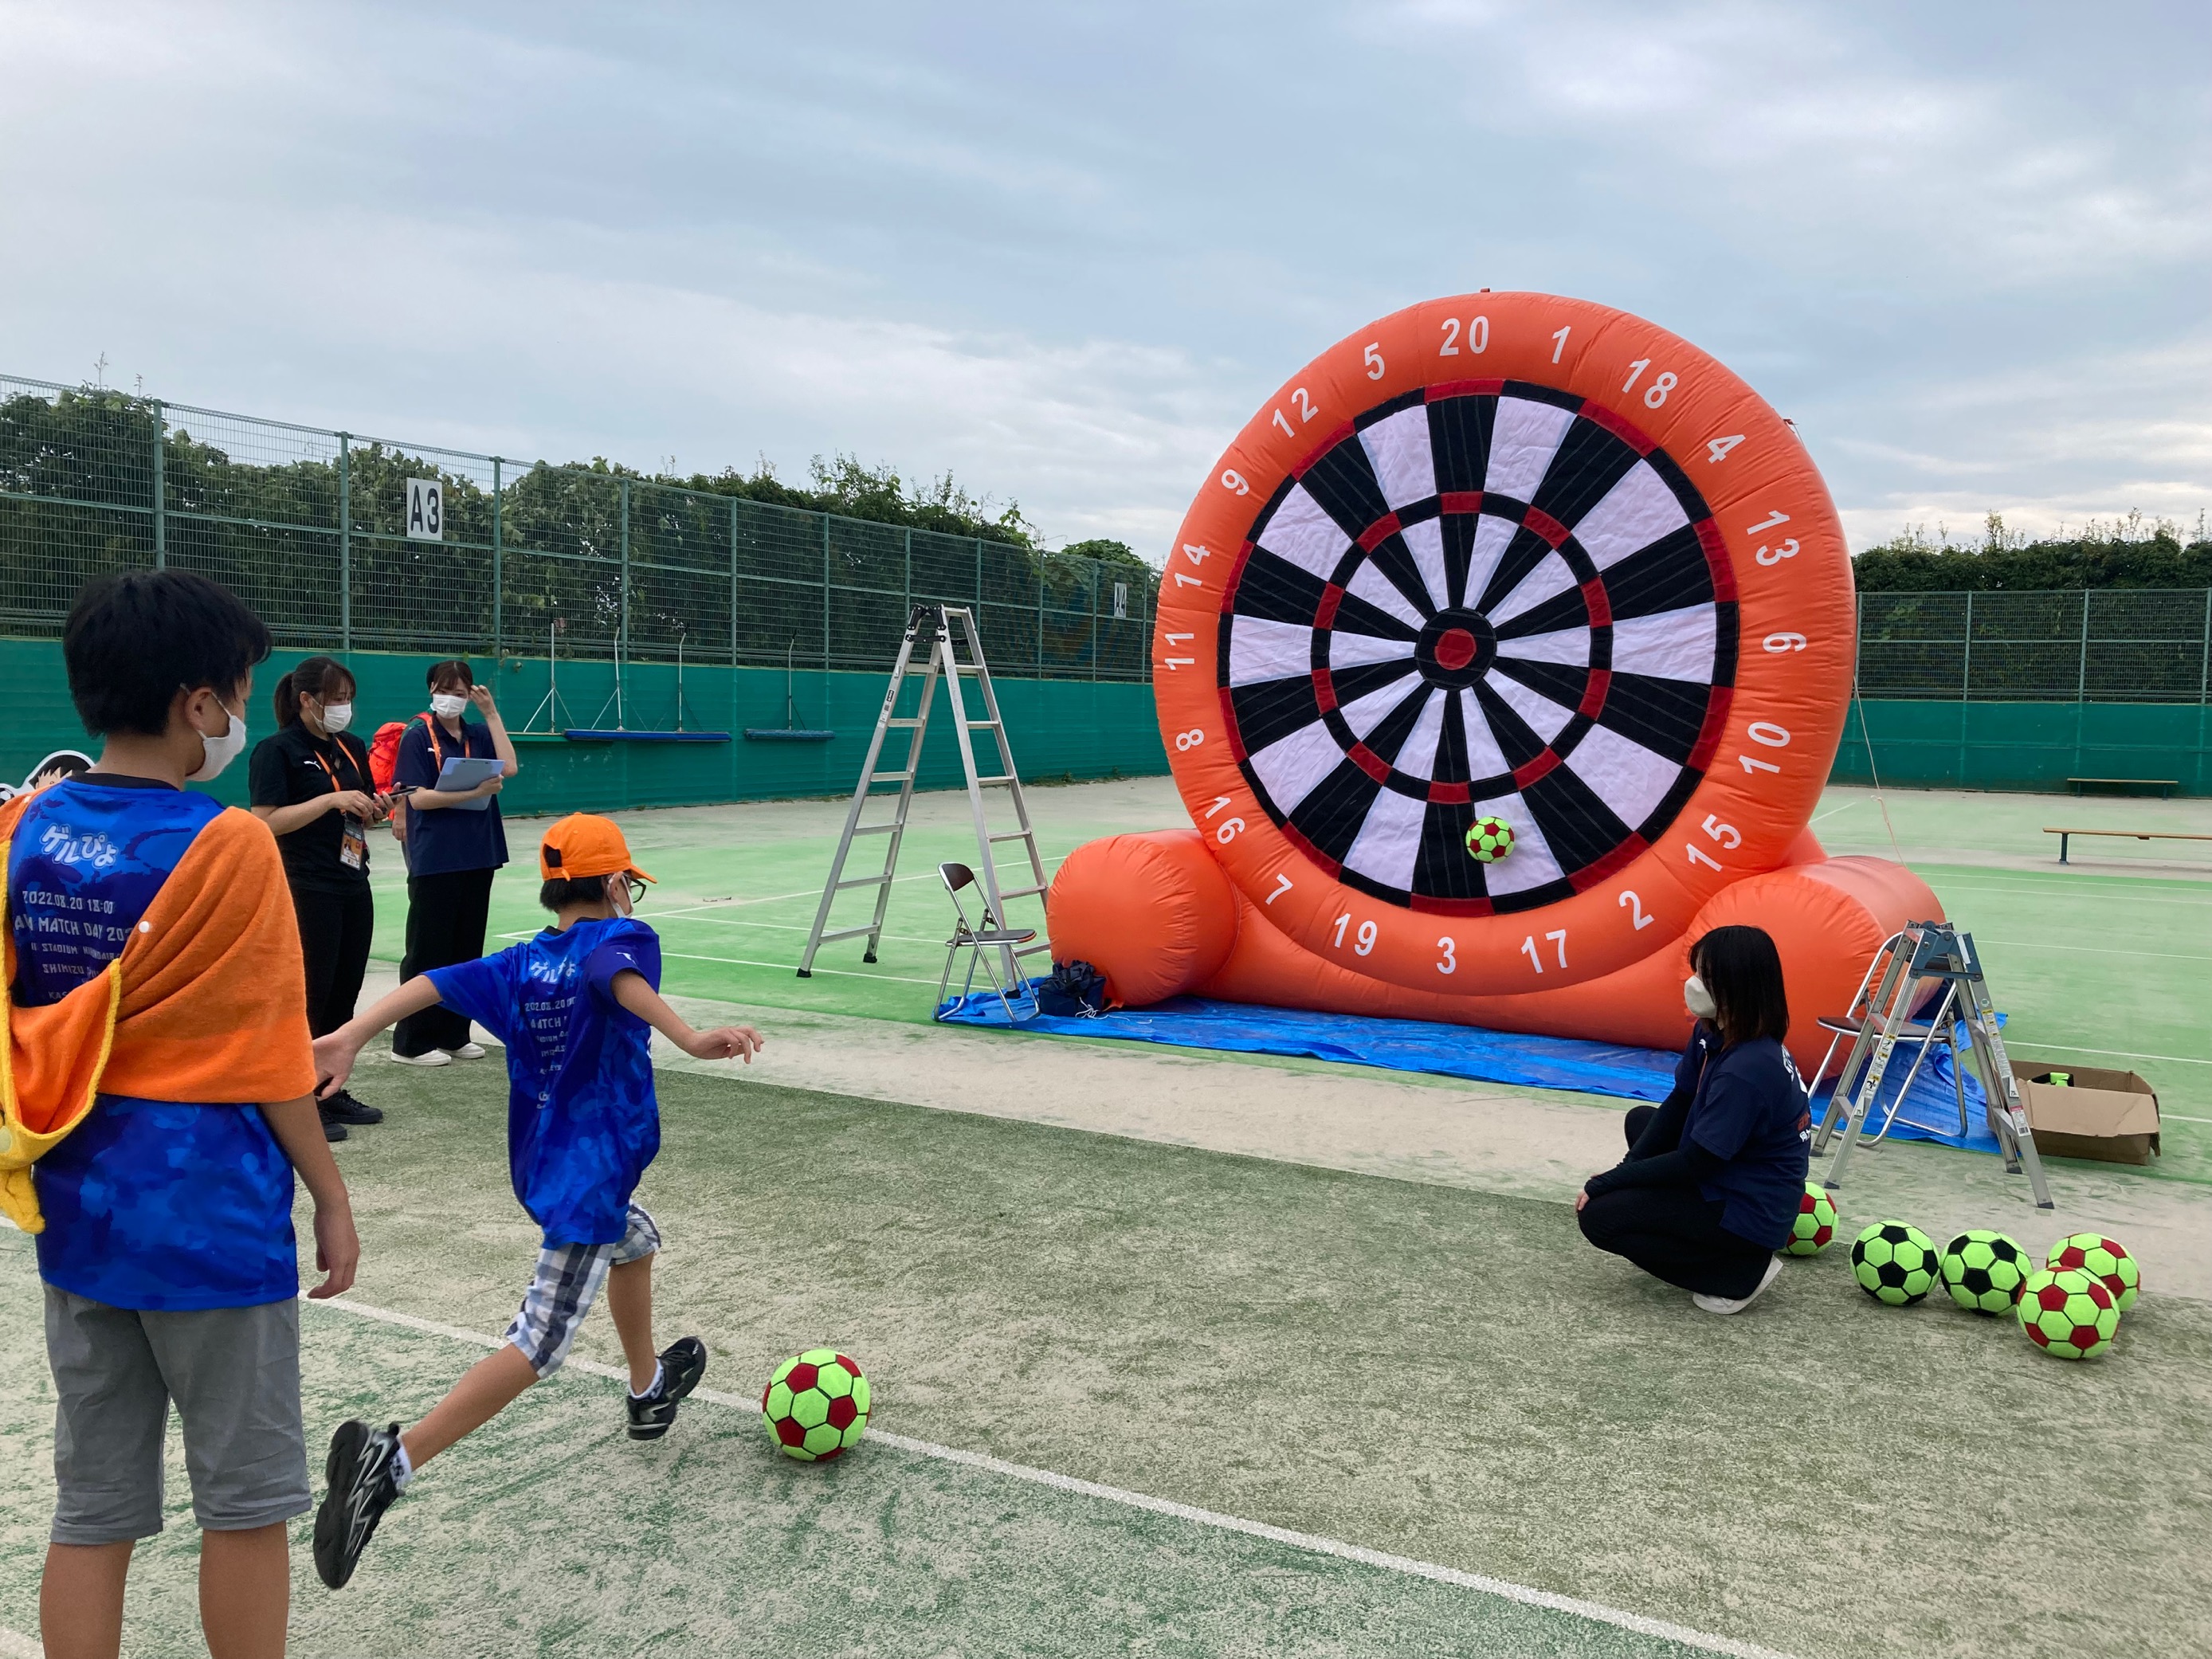 10月29日 土 鹿島アントラーズ戦サッカースクールパークを開催 Iaiスタジアム日本平テニスコート 清水エスパルス公式webサイト